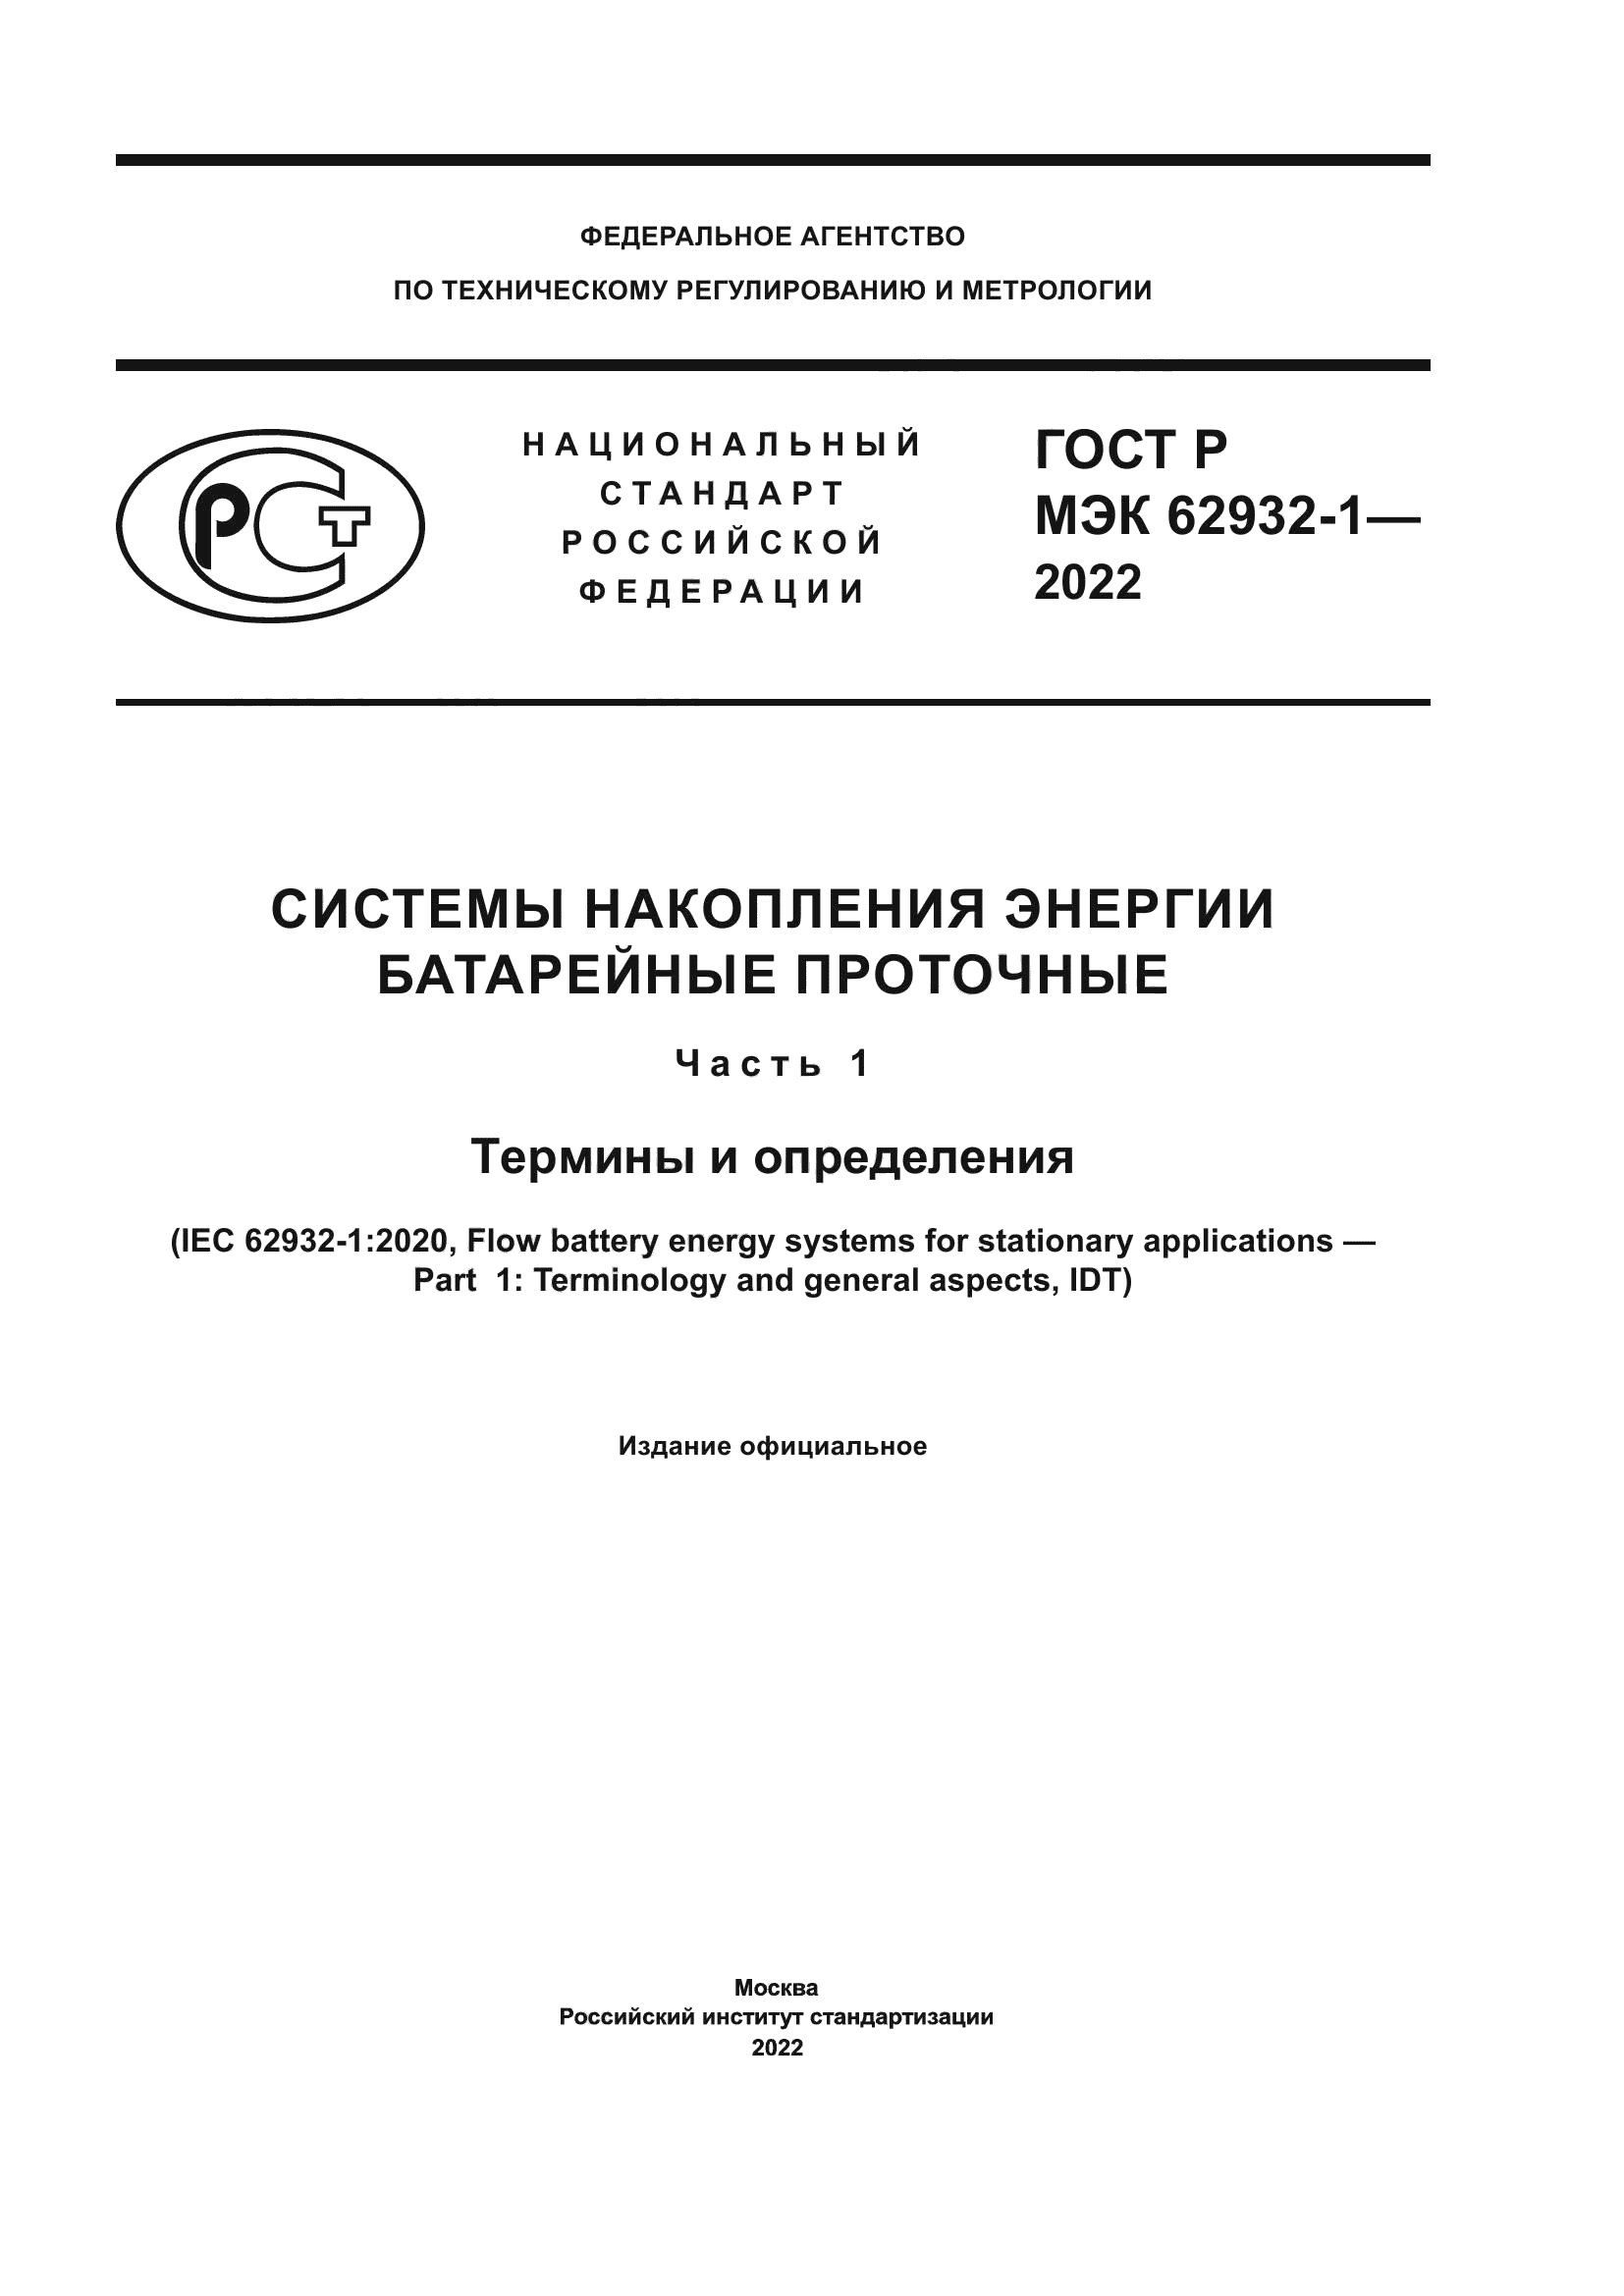 ГОСТ Р МЭК 62932-1-2022